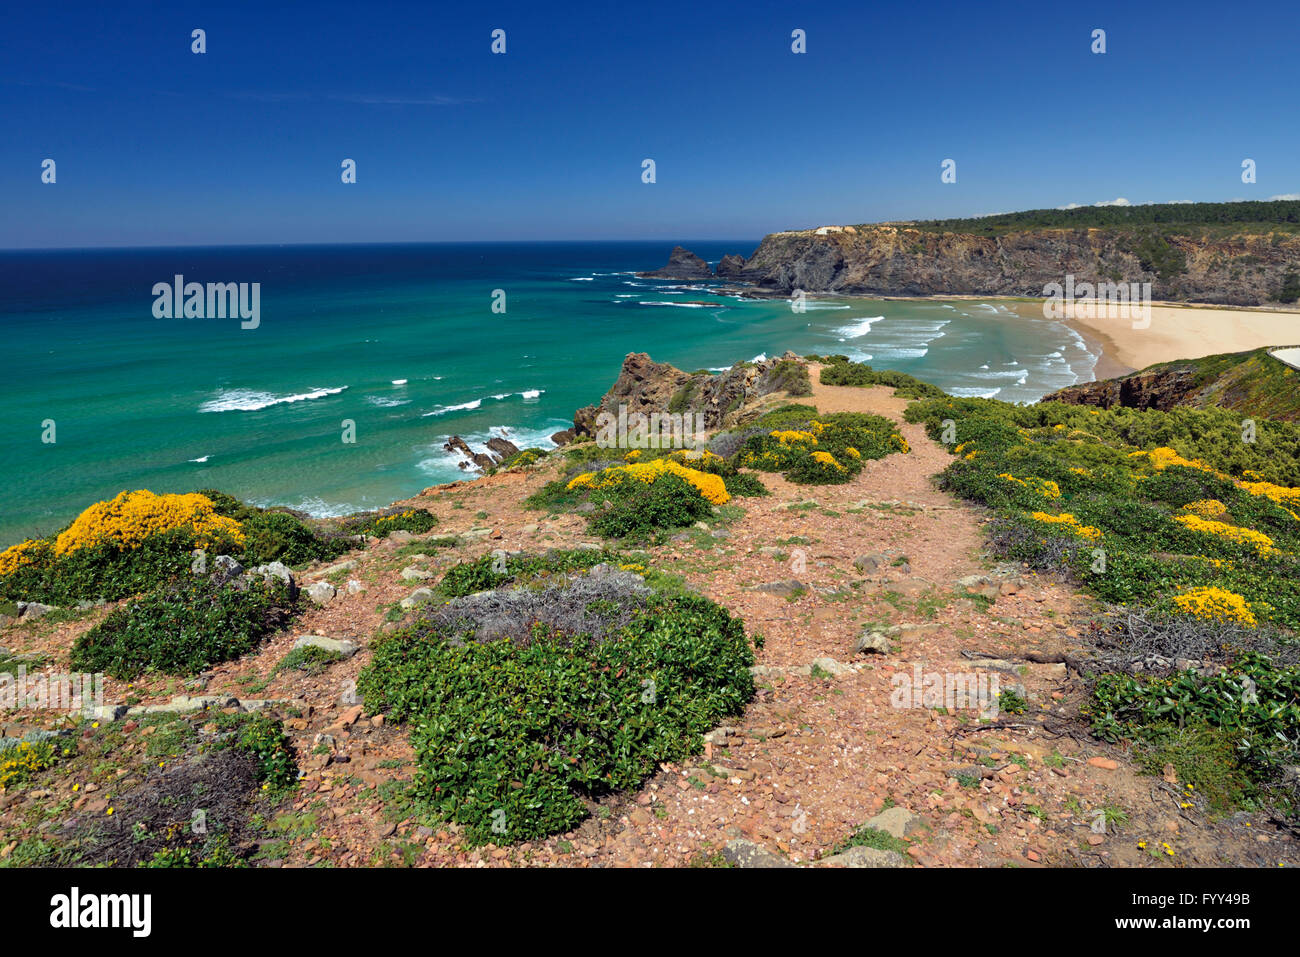 Le Portugal, l'Algarve : sur la mer à partir de falaises avec la végétation côtière de la plage naturelle de Praia de Odeceixe Banque D'Images